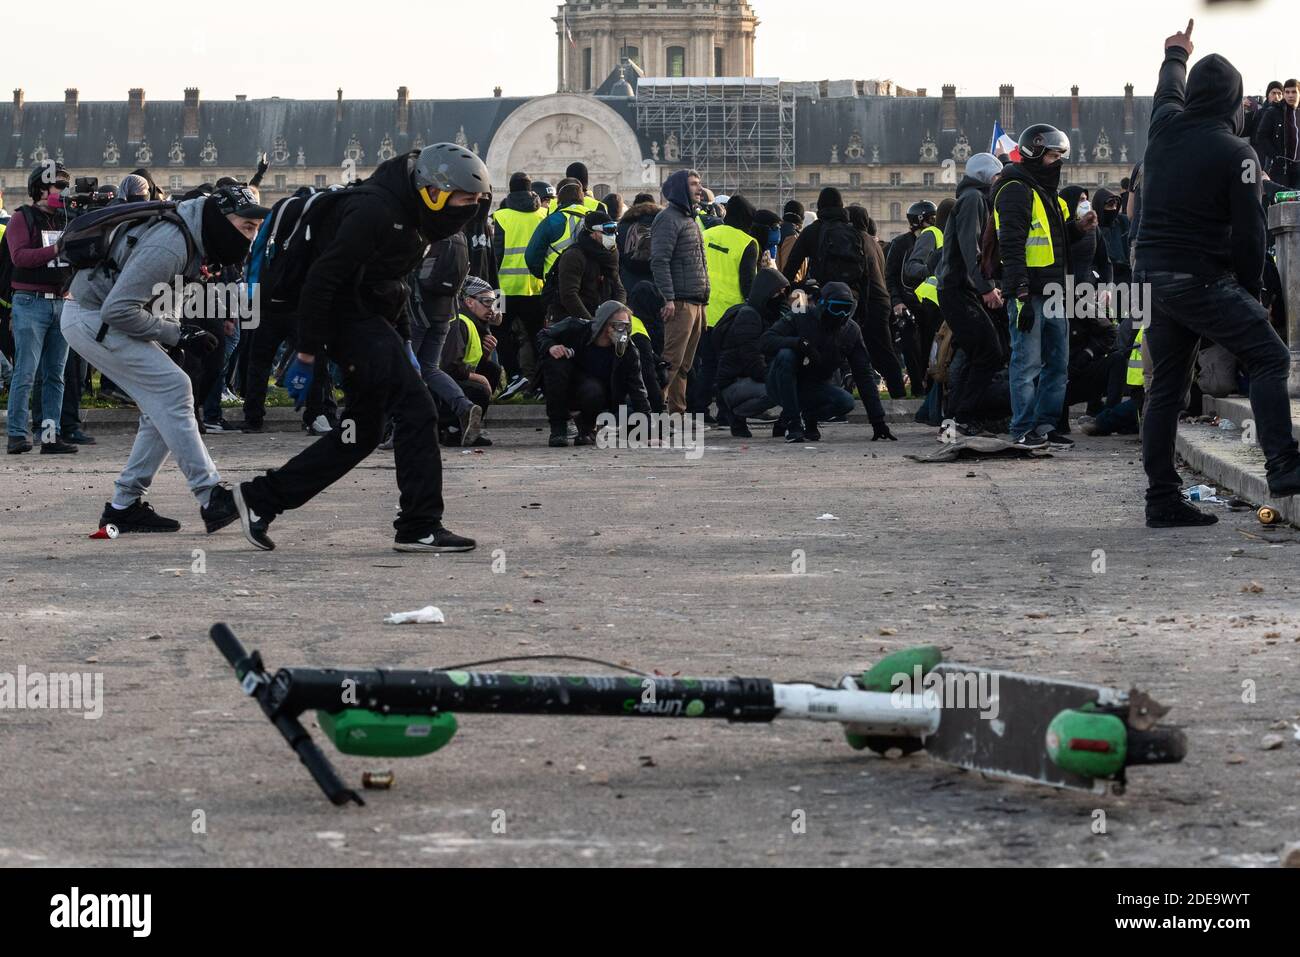 Un groupe de brise-roches lancent des projectiles sur la police depuis l'esplanade des Invalides. Plusieurs milliers de personnes se sont rassemblées pour manifester au cours de l'acte 14 du mouvement de protestation contre l'augmentation du coût de la vie, des impôts et du carburant, des vestes jaunes (Gilets Jaunes). Le parcours parisien a eu lieu entre les champs-Elysées et la place des Invalides dans un calme relatif. Il y a eu quelques affrontements entre des manifestants et la police, qui ont utilisé des gaz lacrymogènes. Paris, France, le 16 février 2019. Photo de Samuel Boivin / ABACAPRESS.COM Banque D'Images